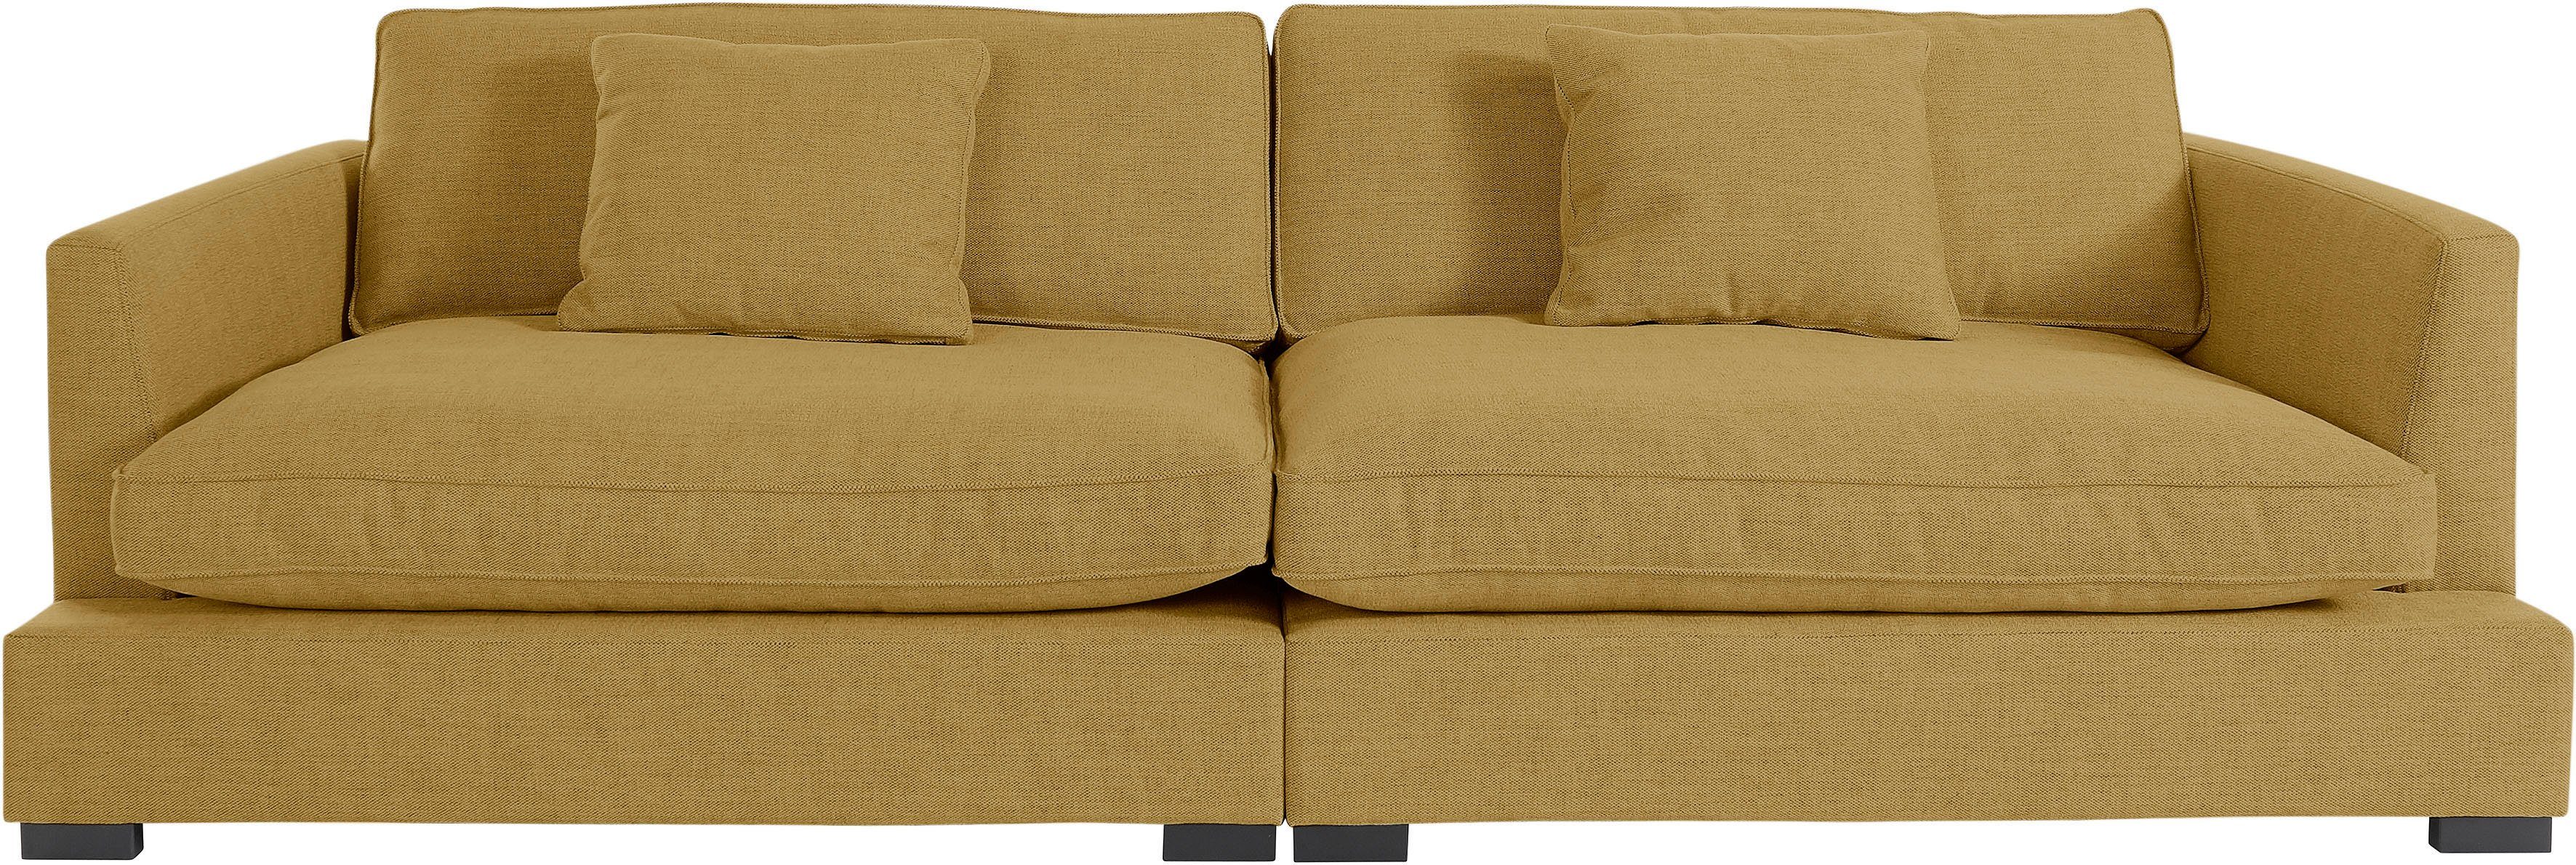 Guido Maria Kretschmer Home&Living Megabank Annera bijzonder zacht en knuffelig zitcomfort, met extra diepe zitoppervlakken